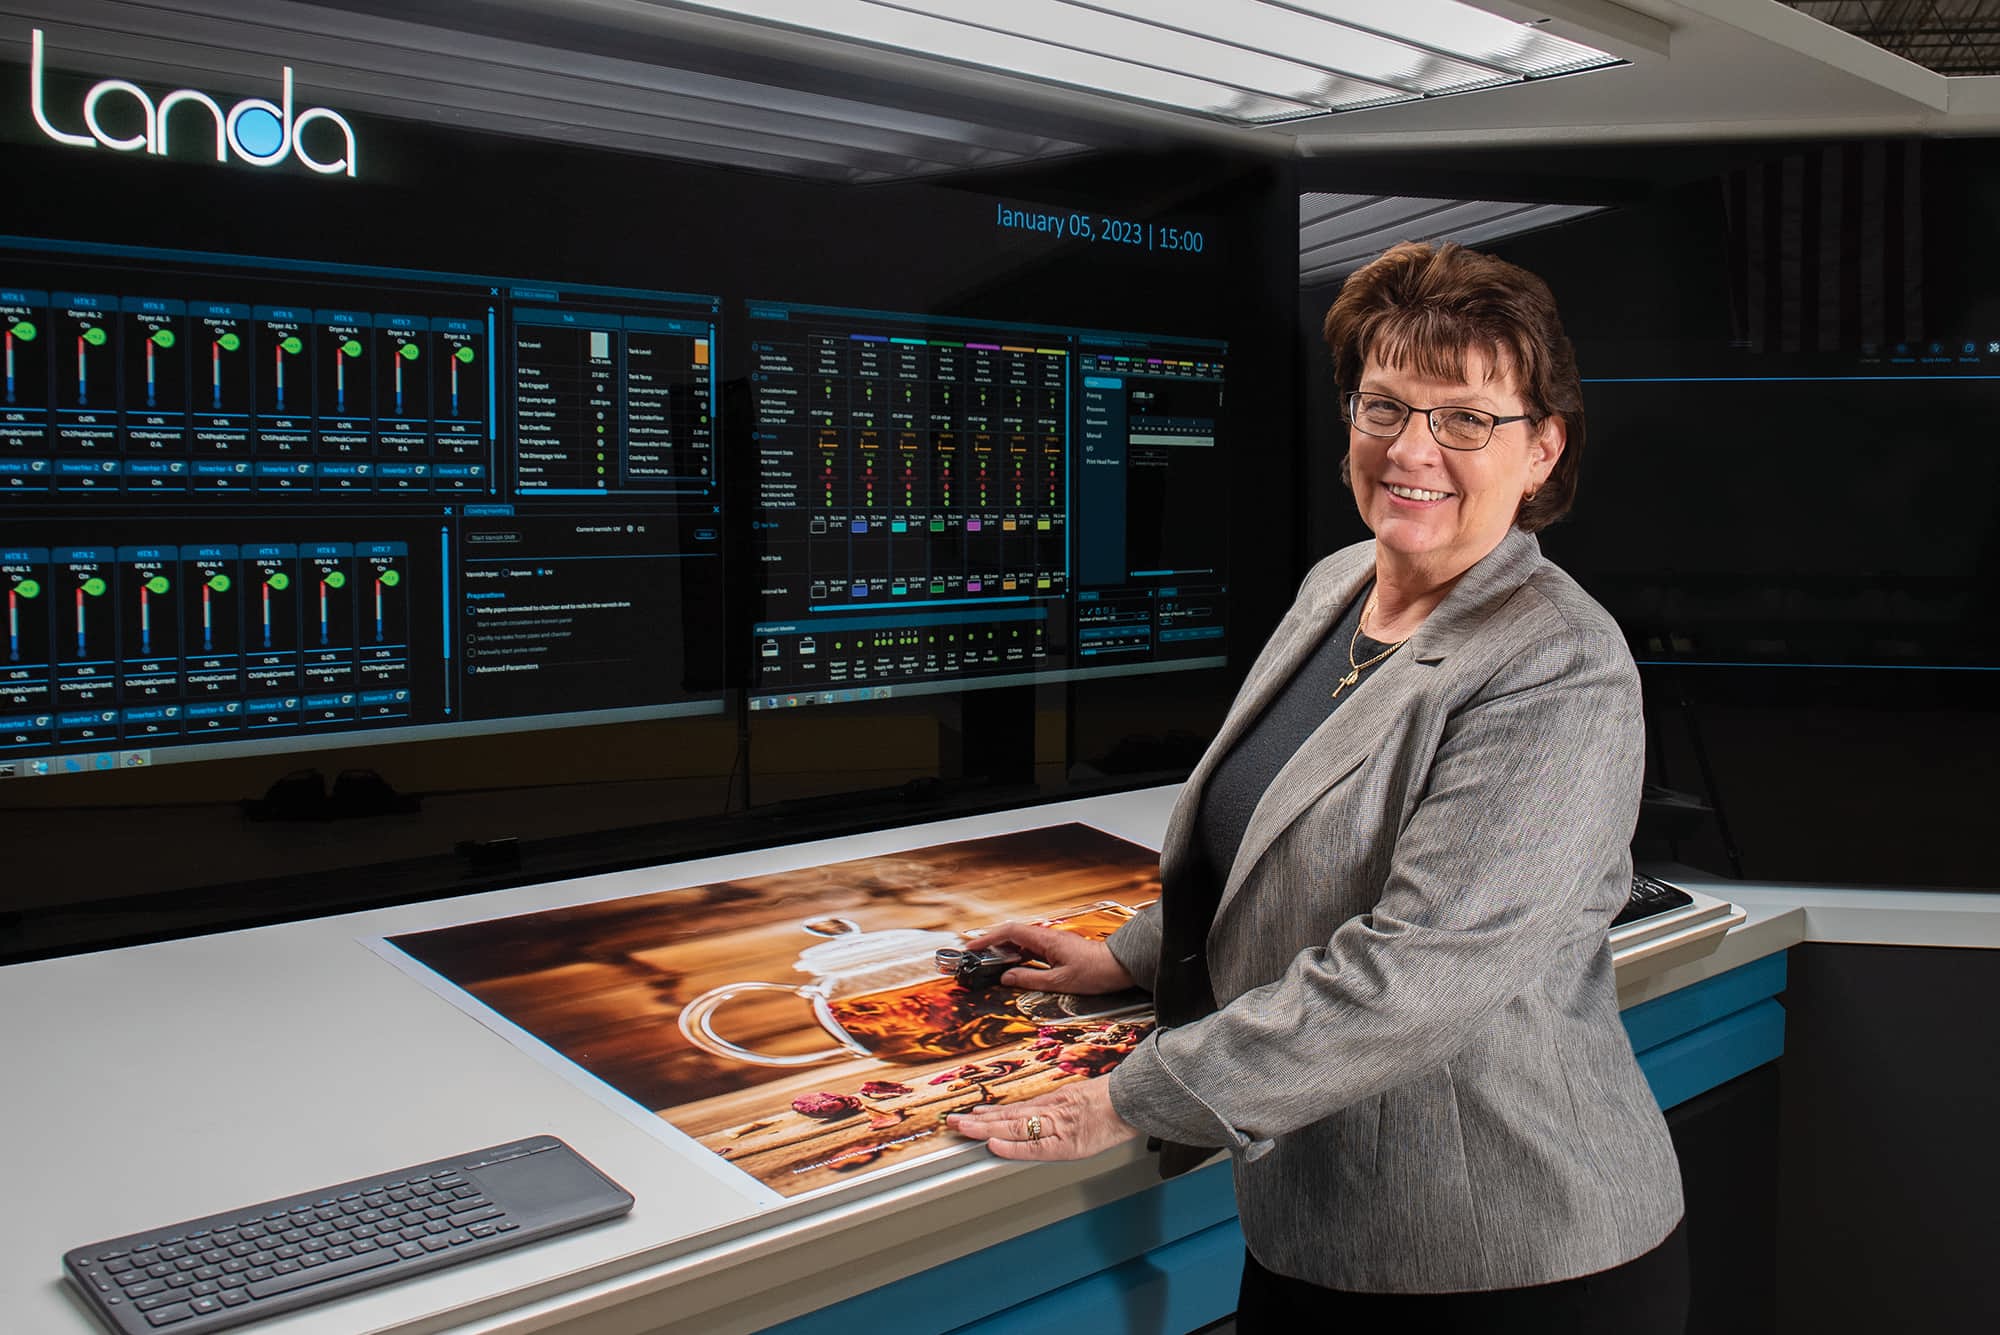 CEO of Quantum Group Cheryl Kahanec in front of Landa digital printing press